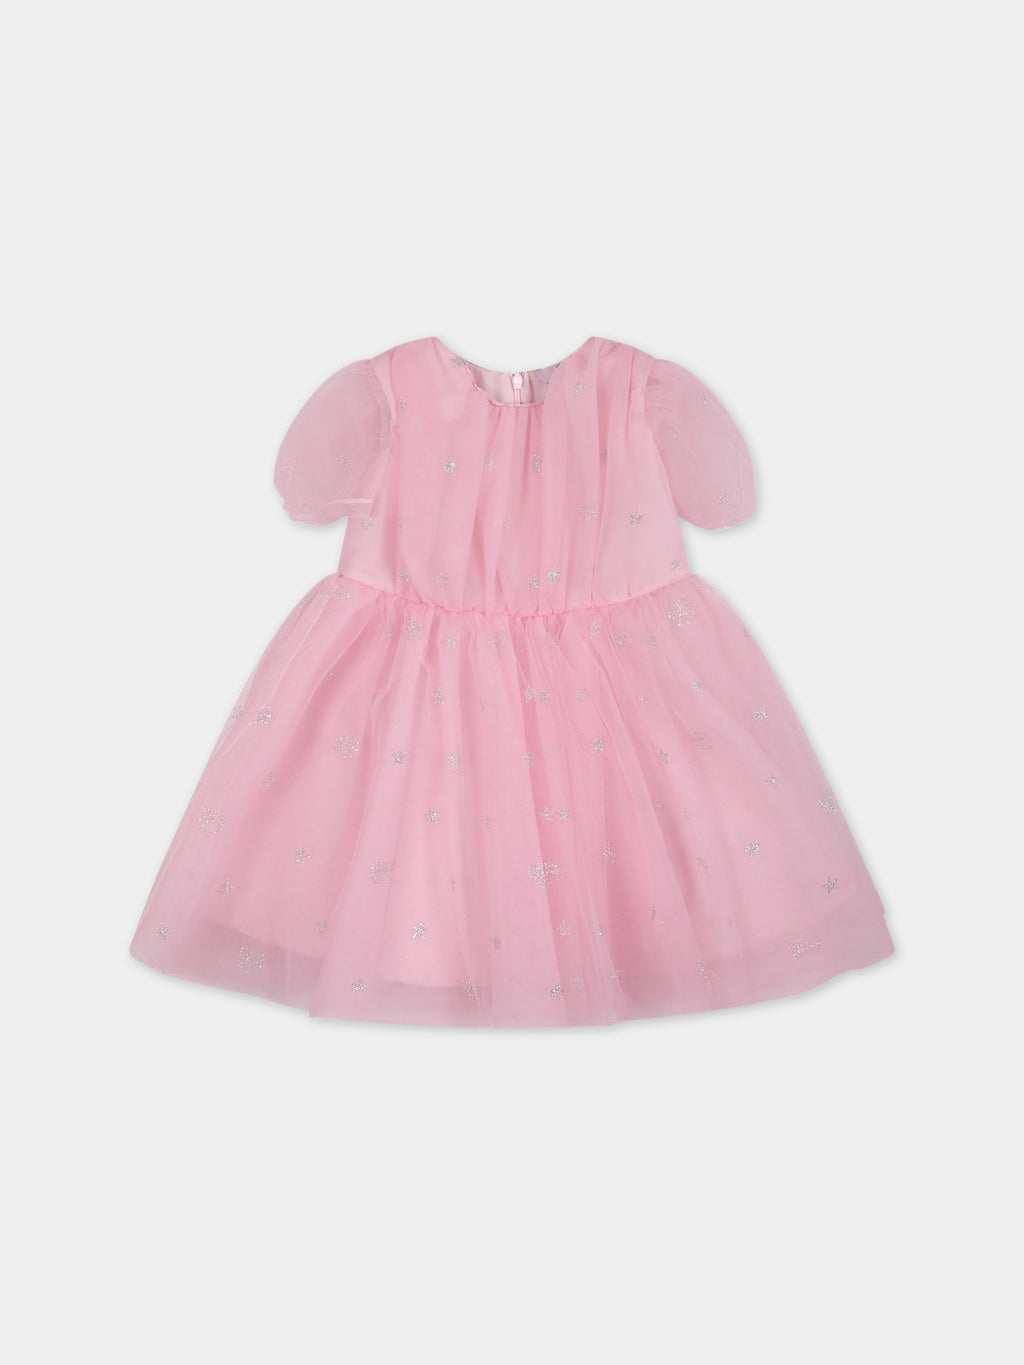 Vestito rosa per neonata con iconici eyes flirting e stelle